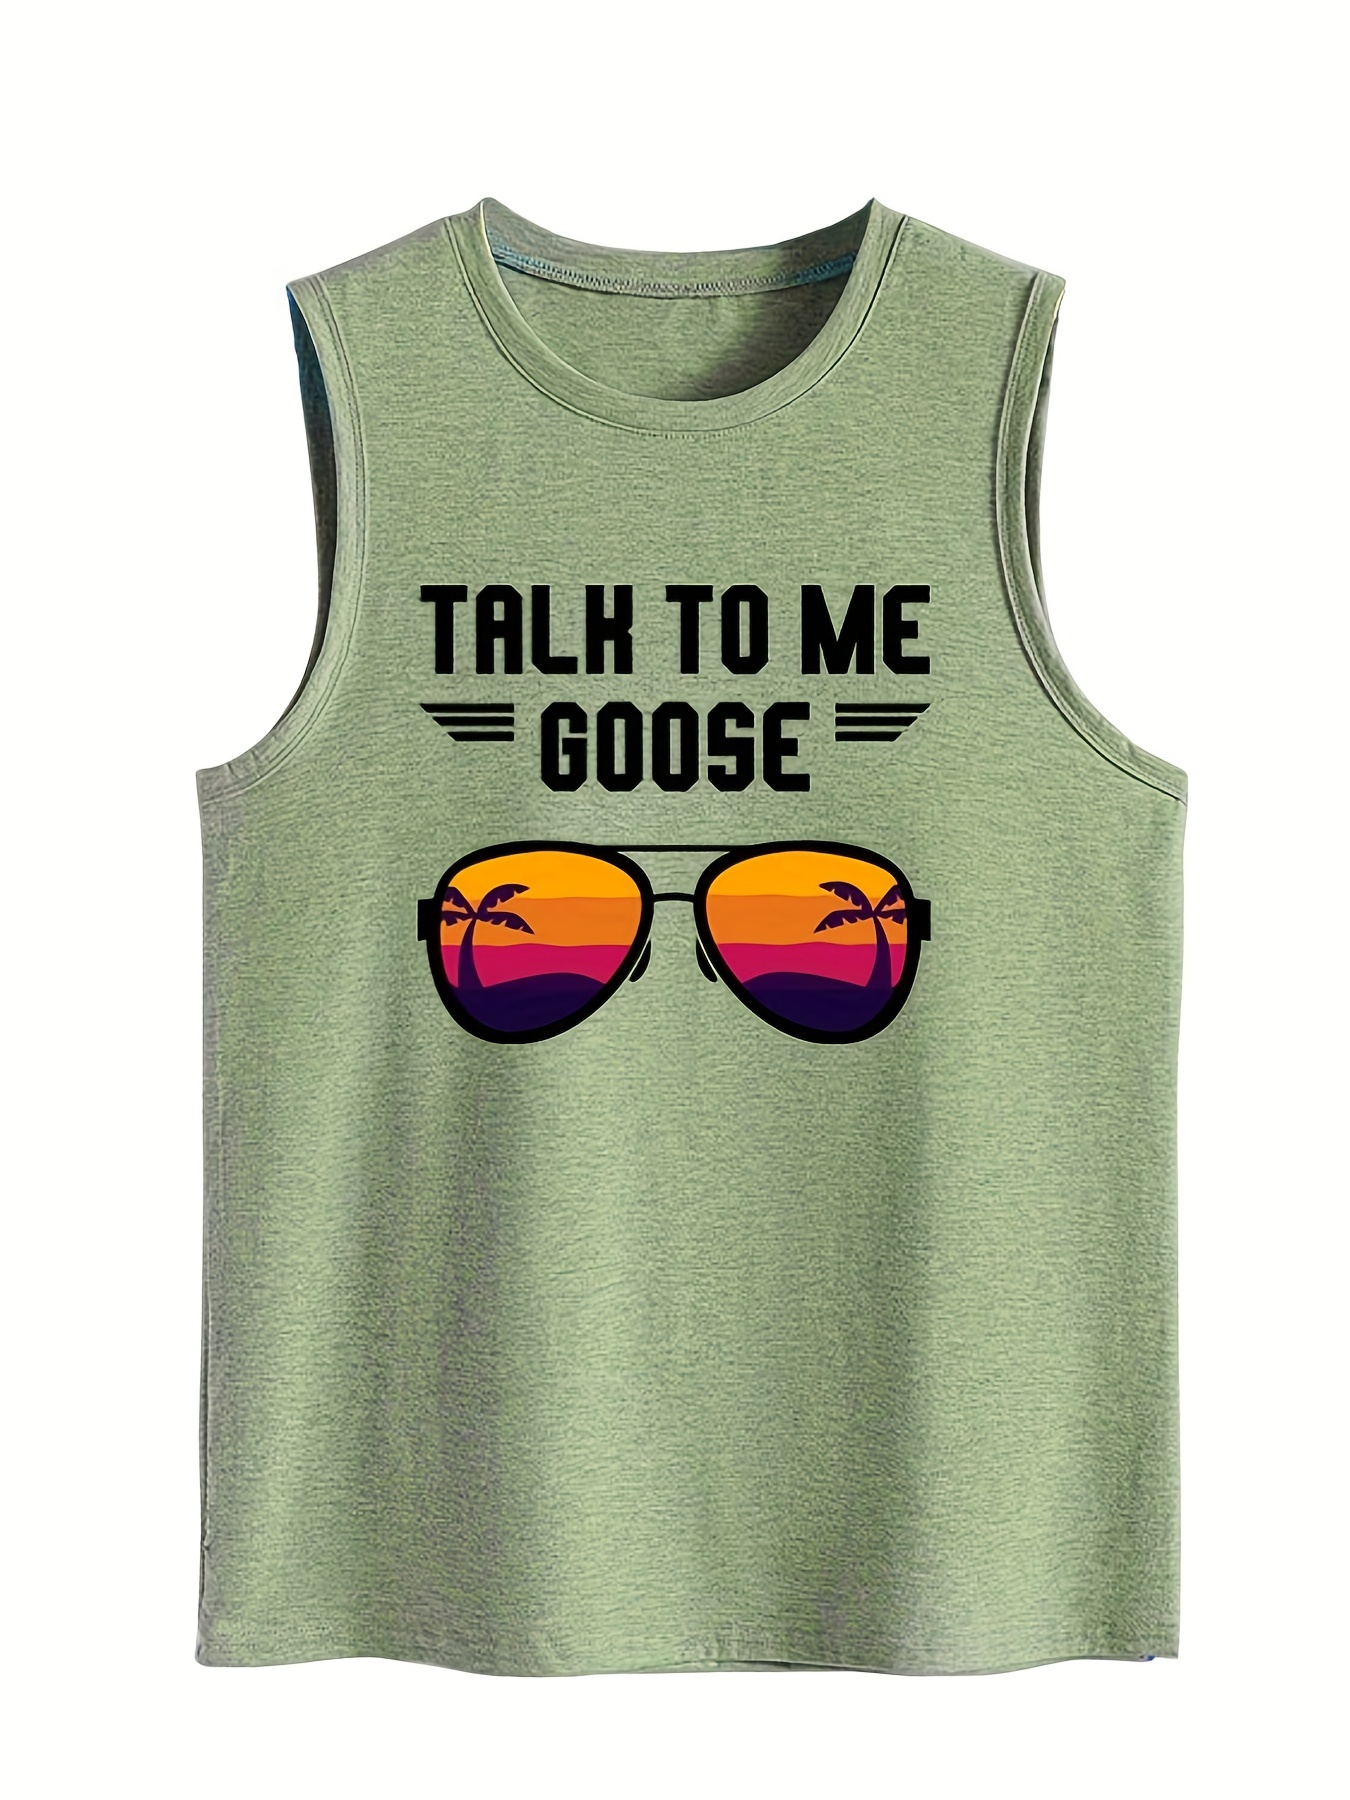 Talk to me Goose T-Shirt – Carolina Brown Apparel